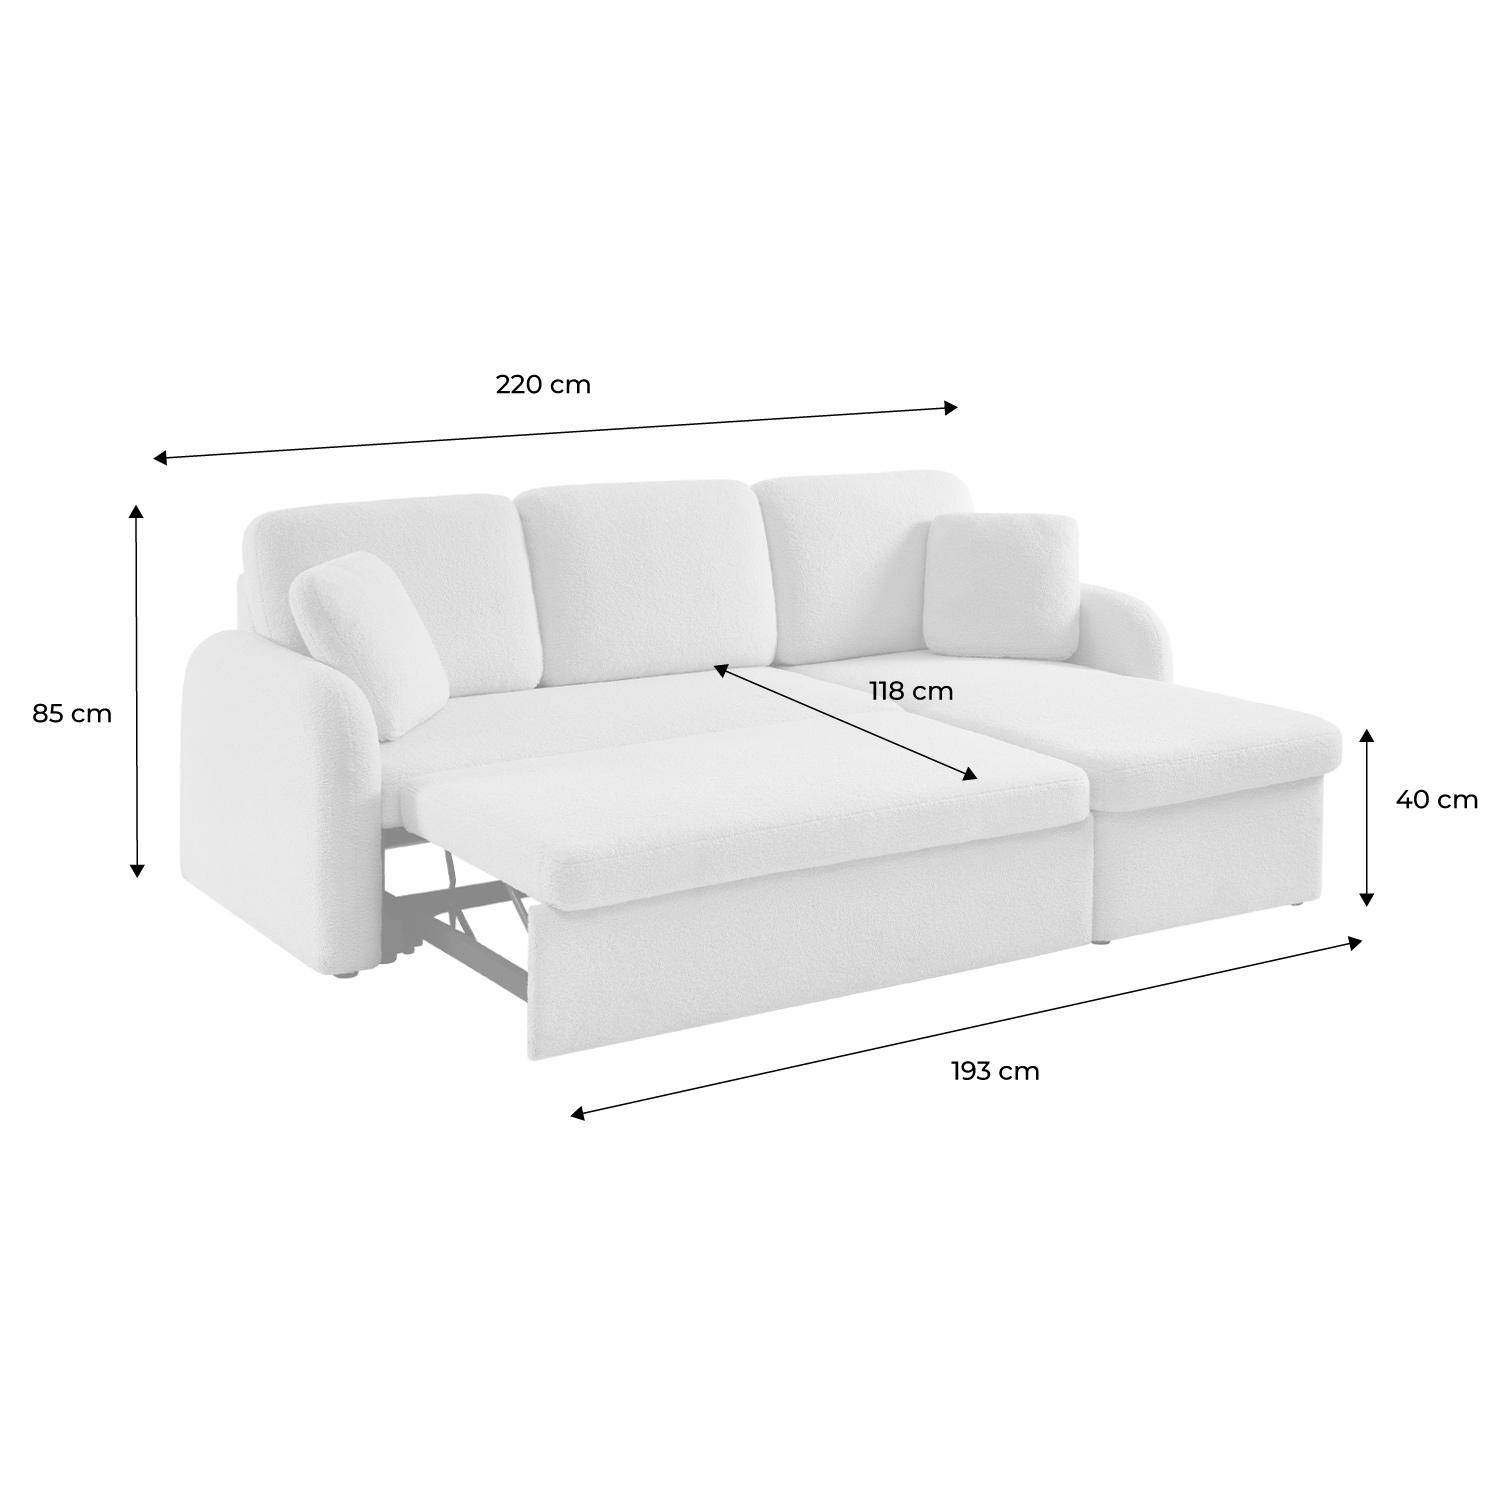 Sofá cama esquinero de 3 plazas en tejido borreguito blanco, sillón esquinero reversible, caja de almacenaje, Milano Photo9